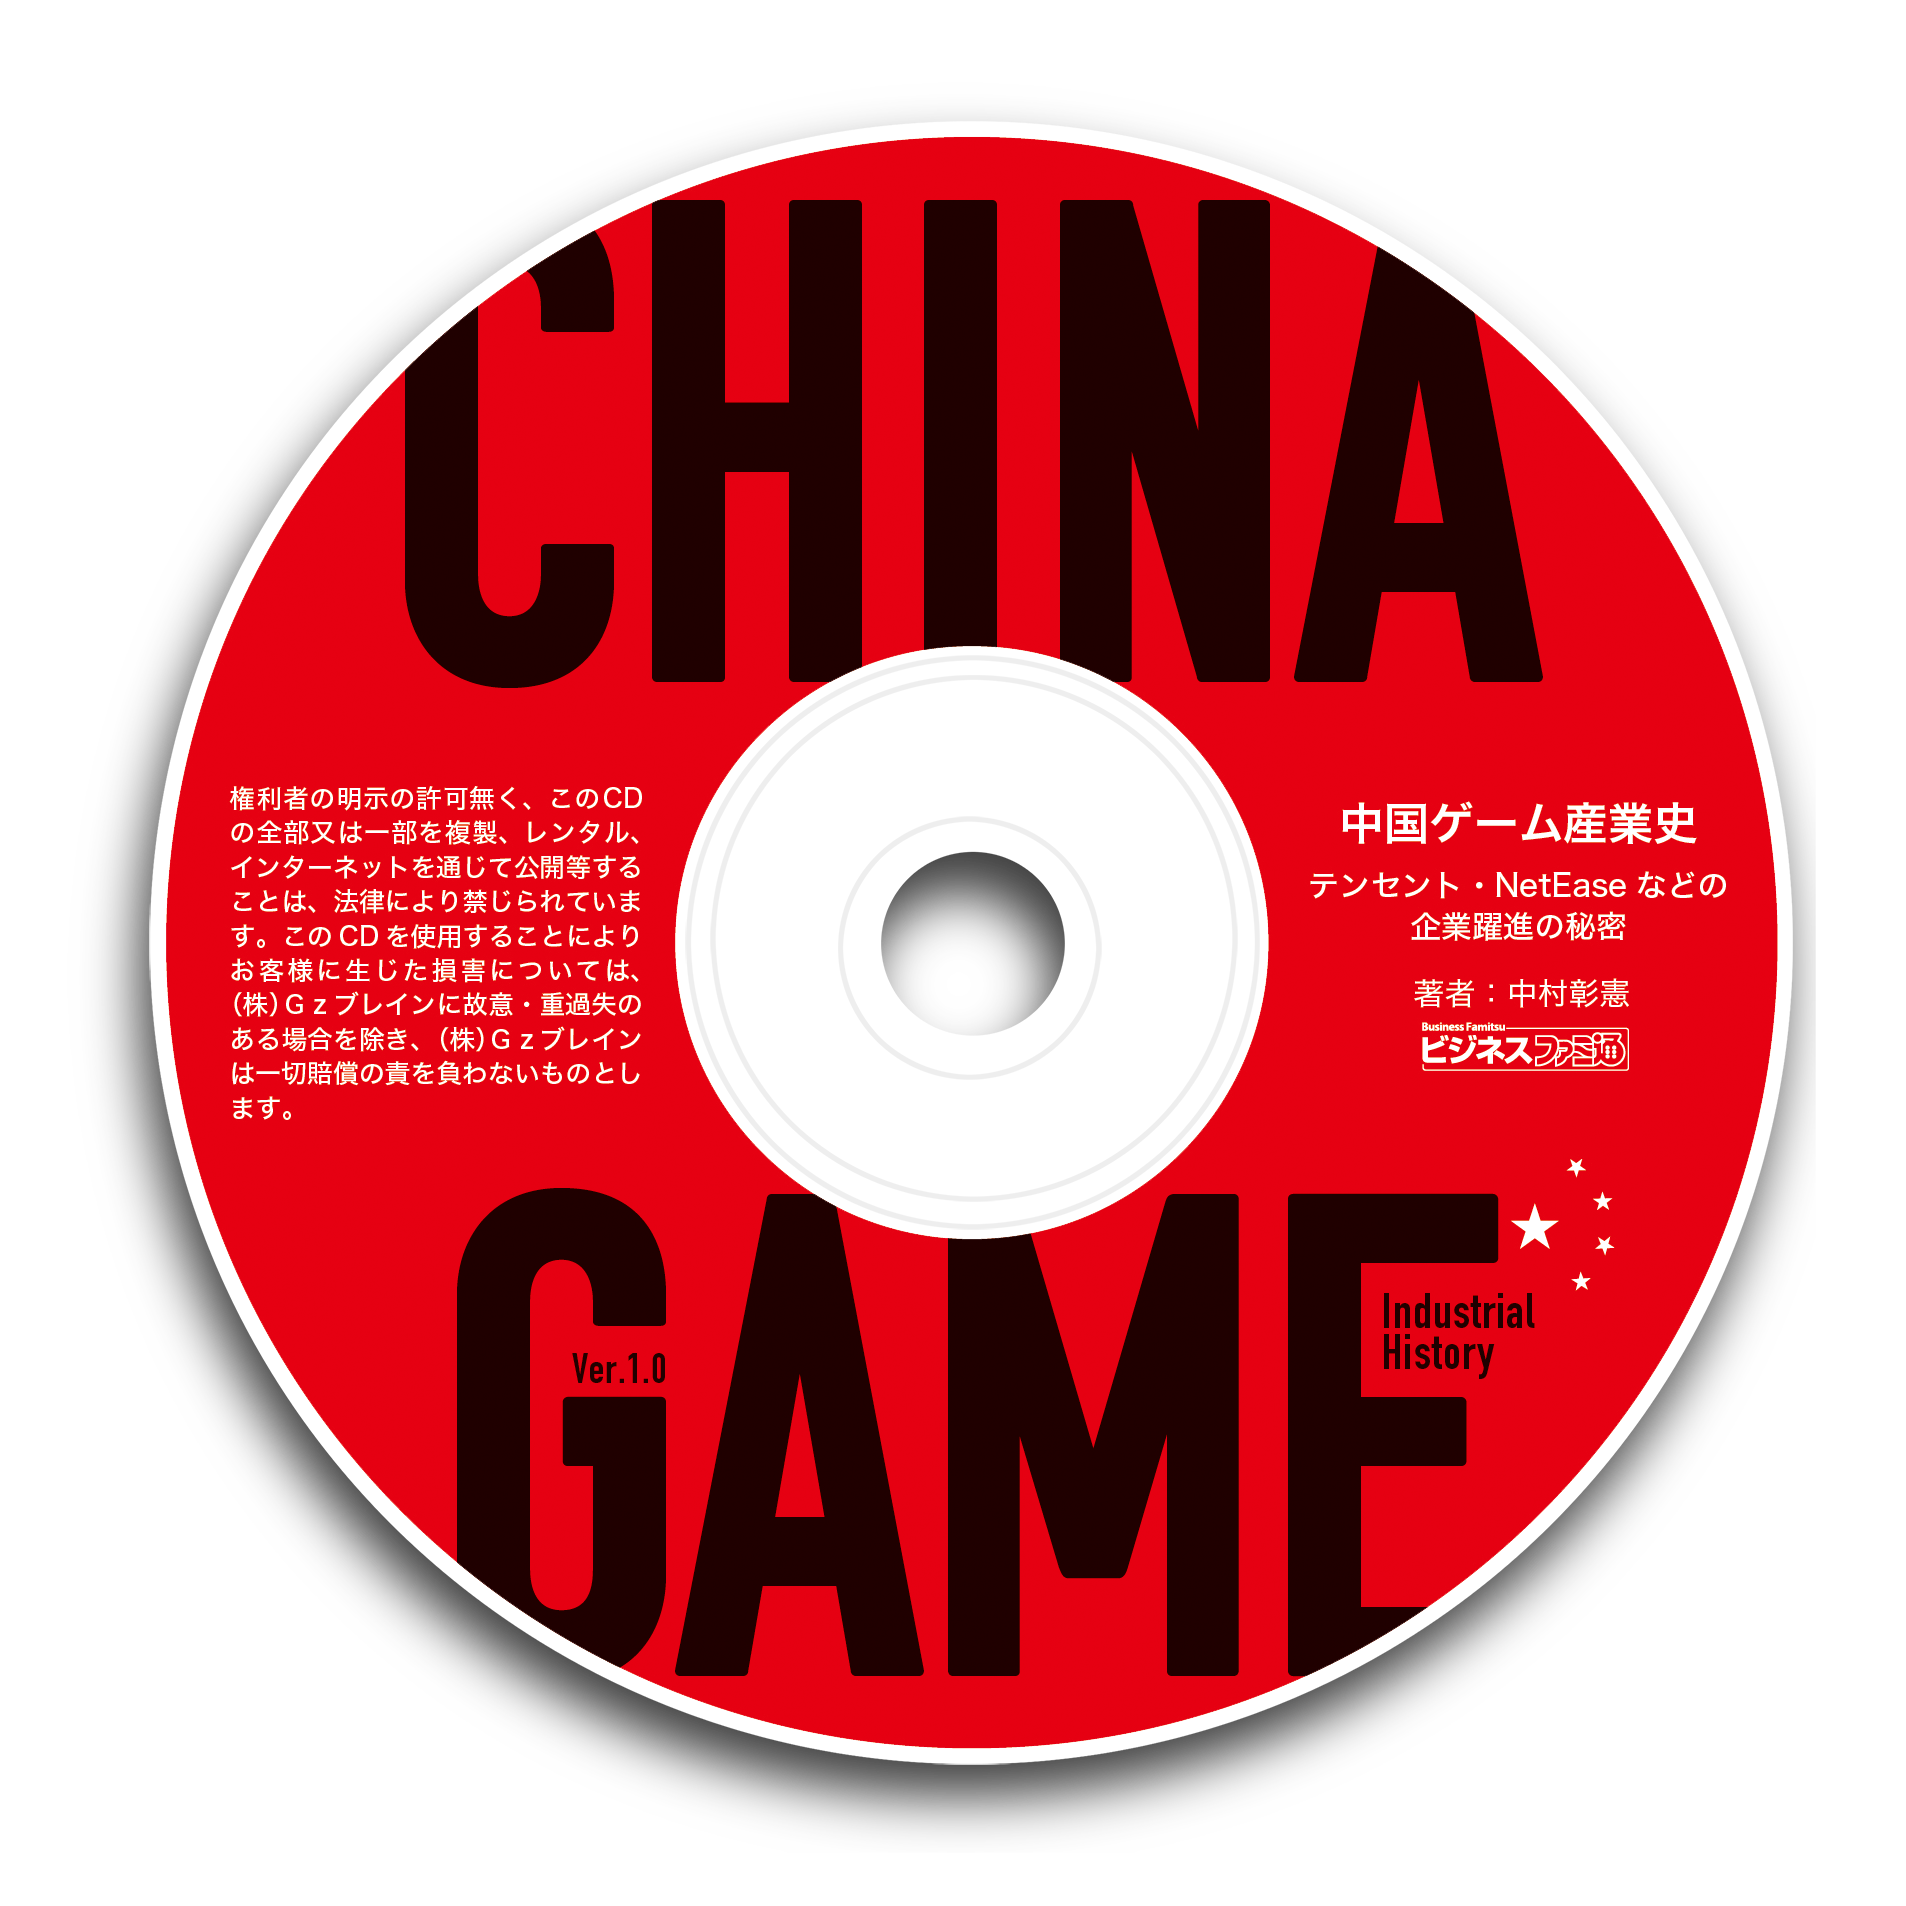 中国ゲーム産業史 テンセント・NetEaseなどの企業躍進の秘密